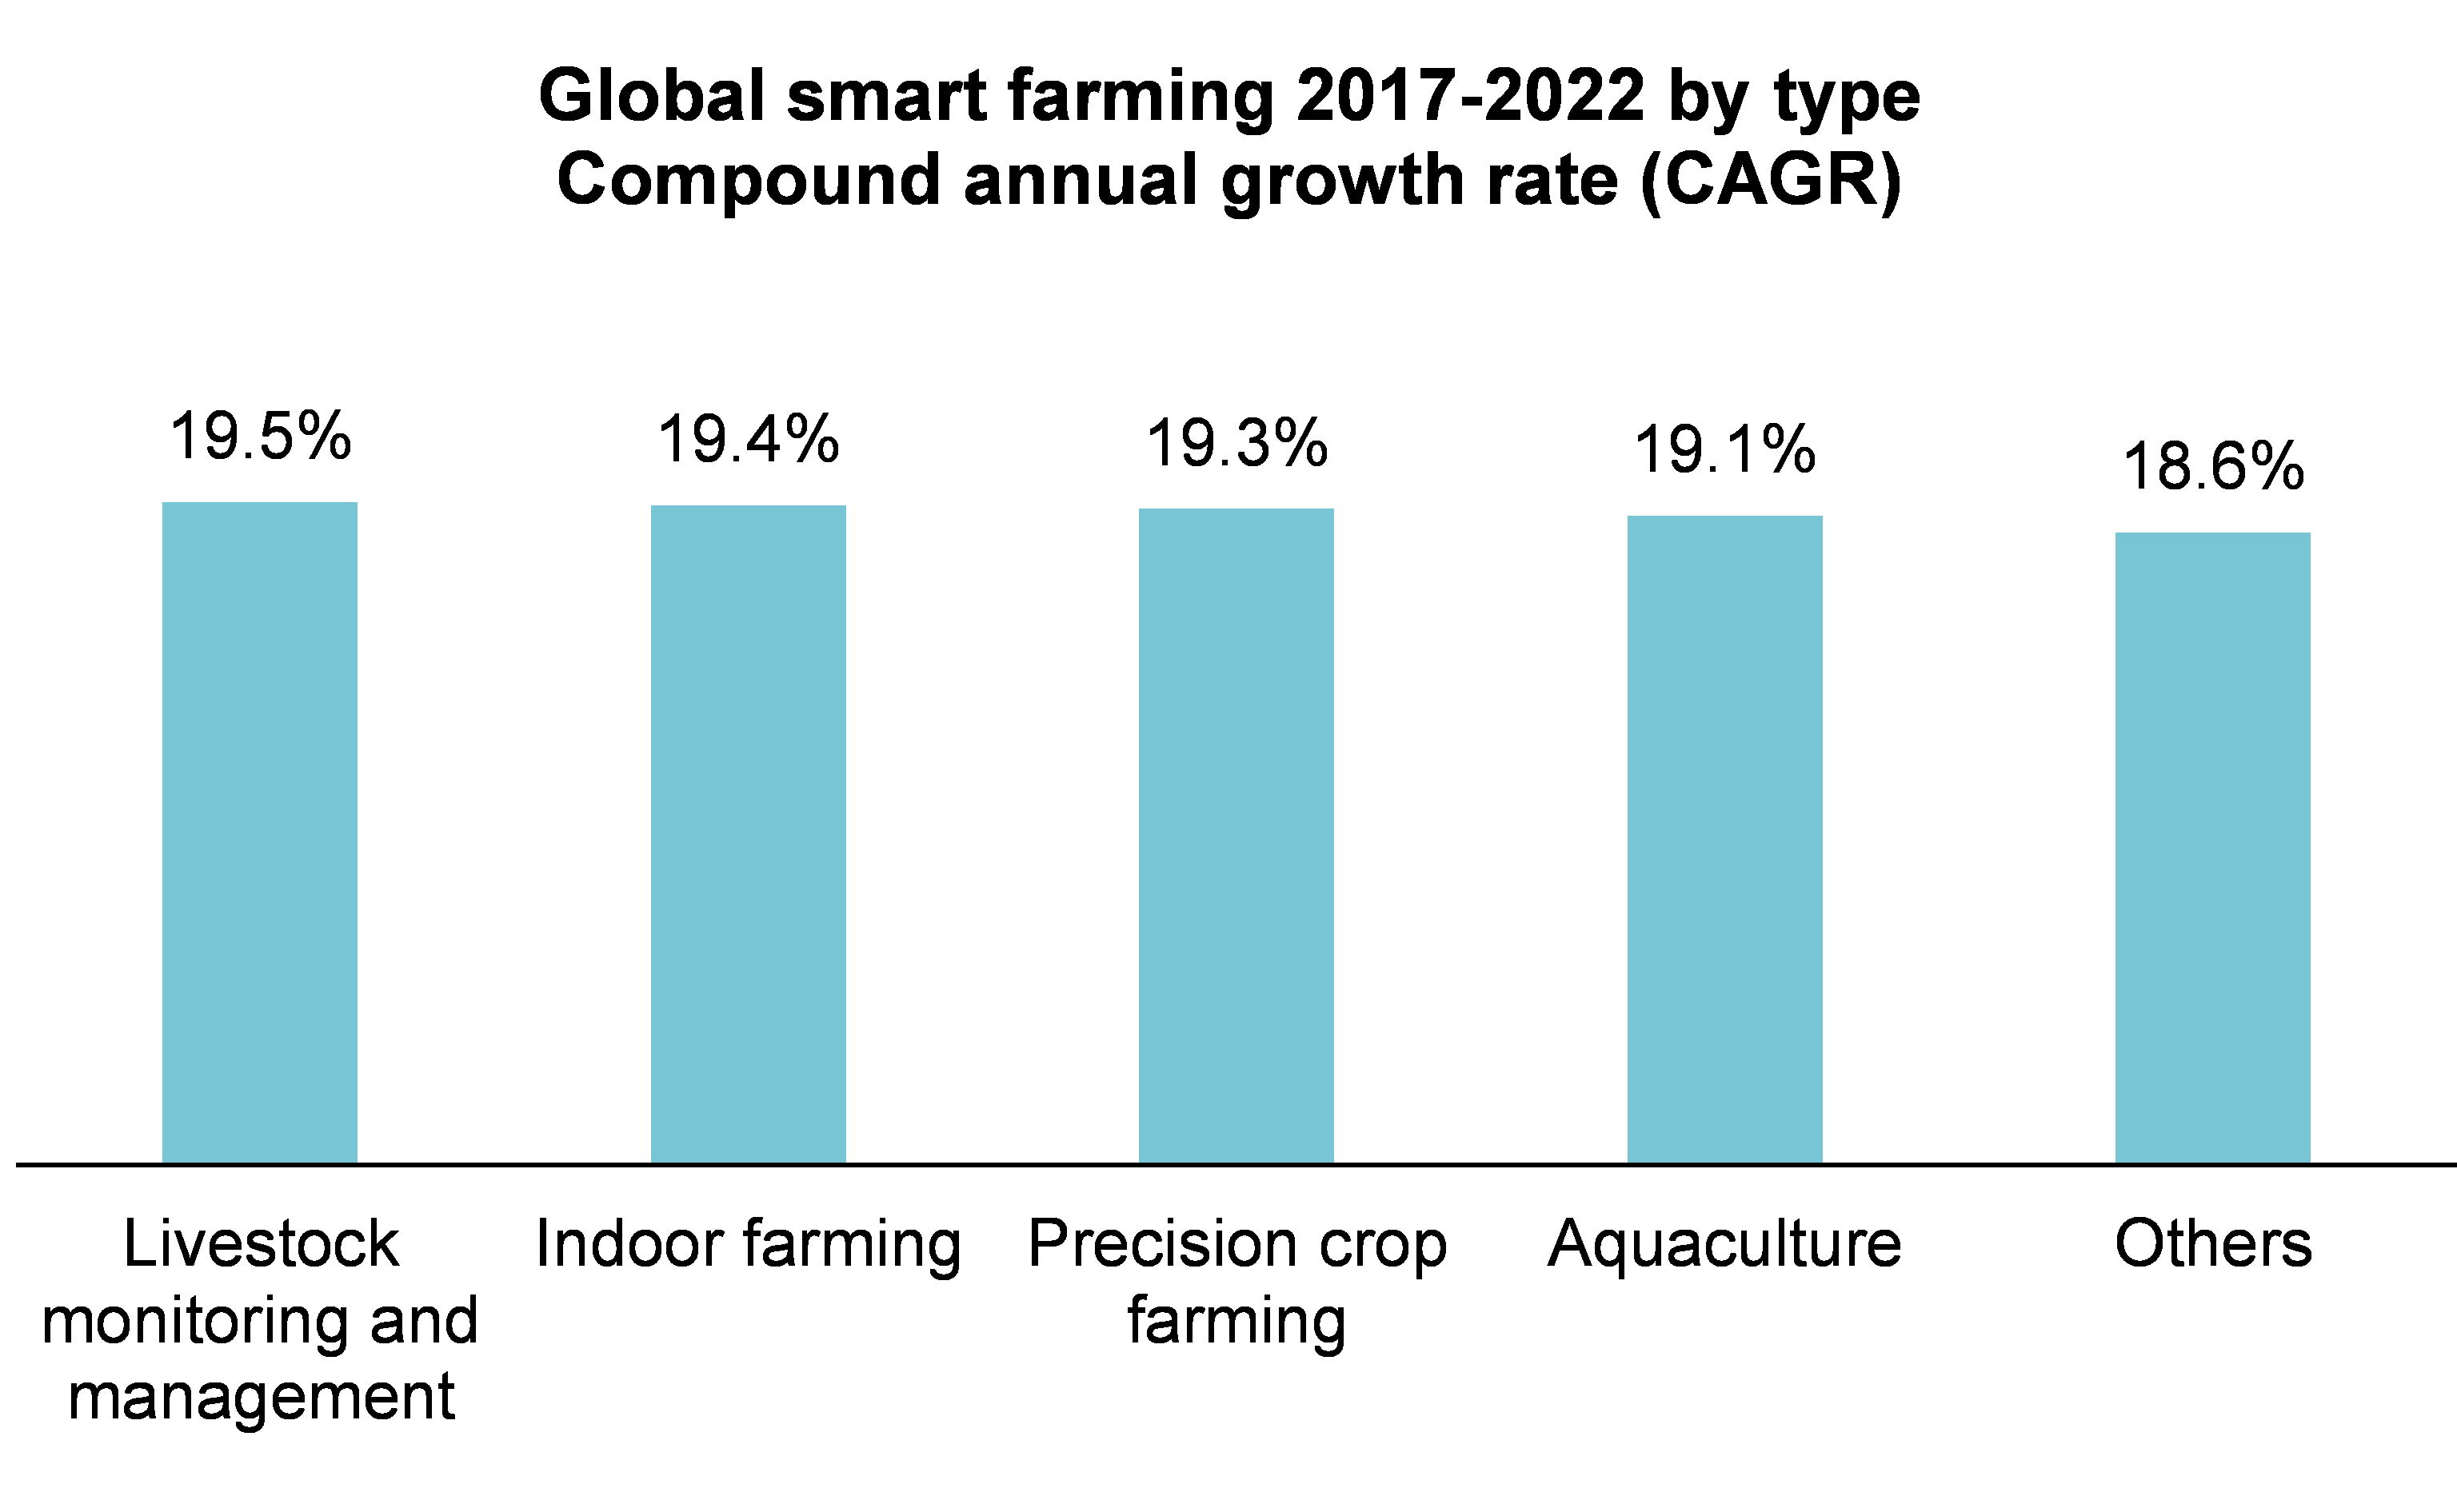 Diagramm: Die fünf am stärksten wachsenden Segmente des globalen Smart-Farming-Marktes (durchschnittliche jährliche Wachstumsrate)